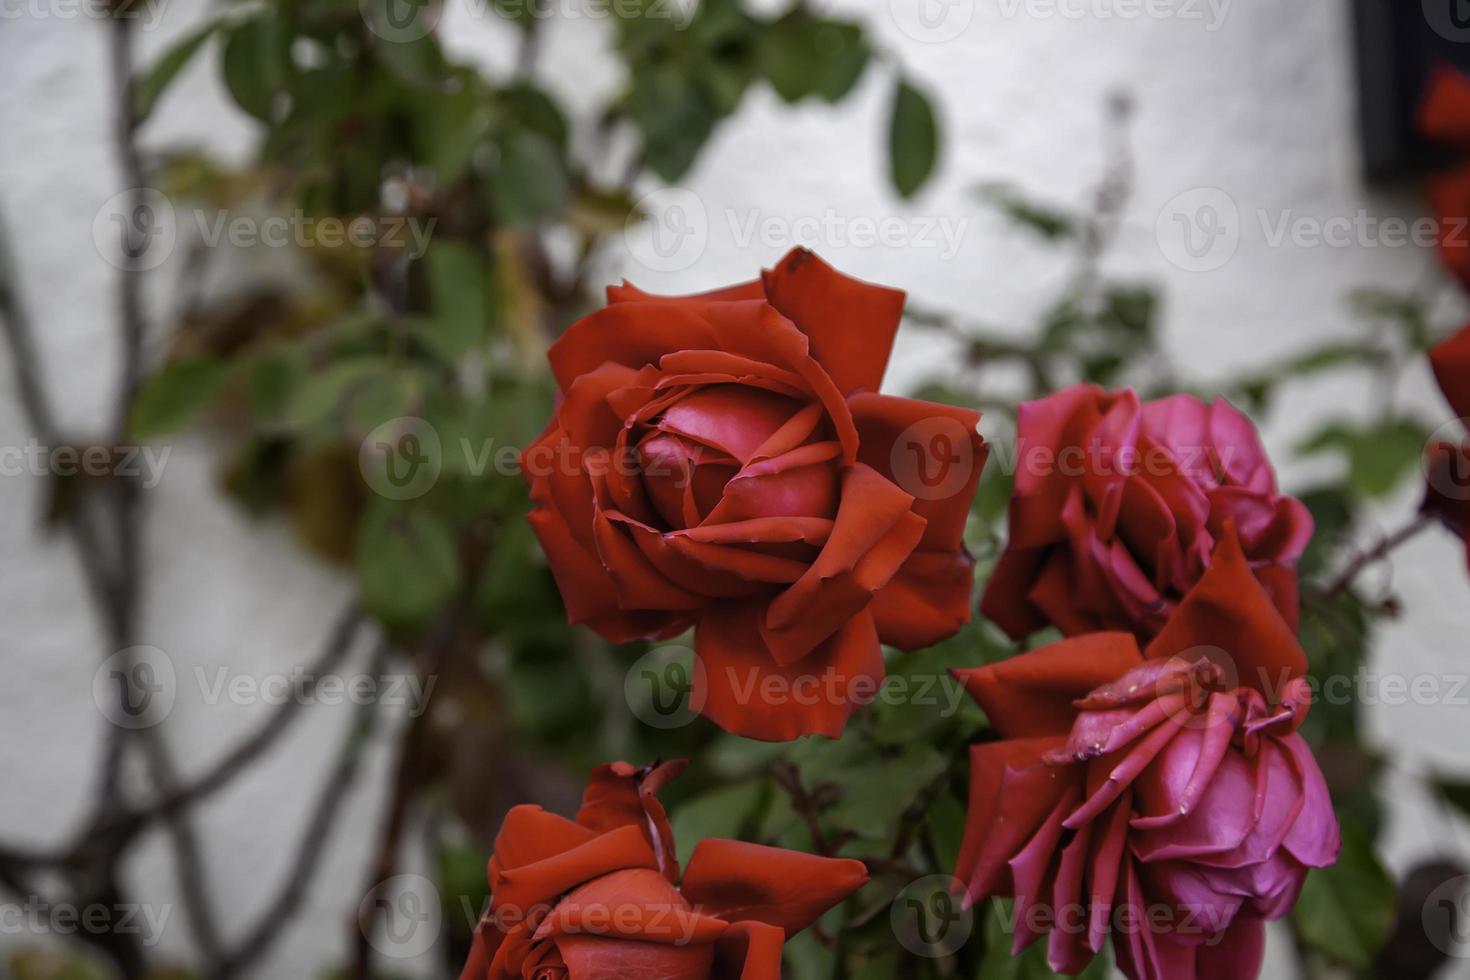 roseira de rosas vermelhas foto